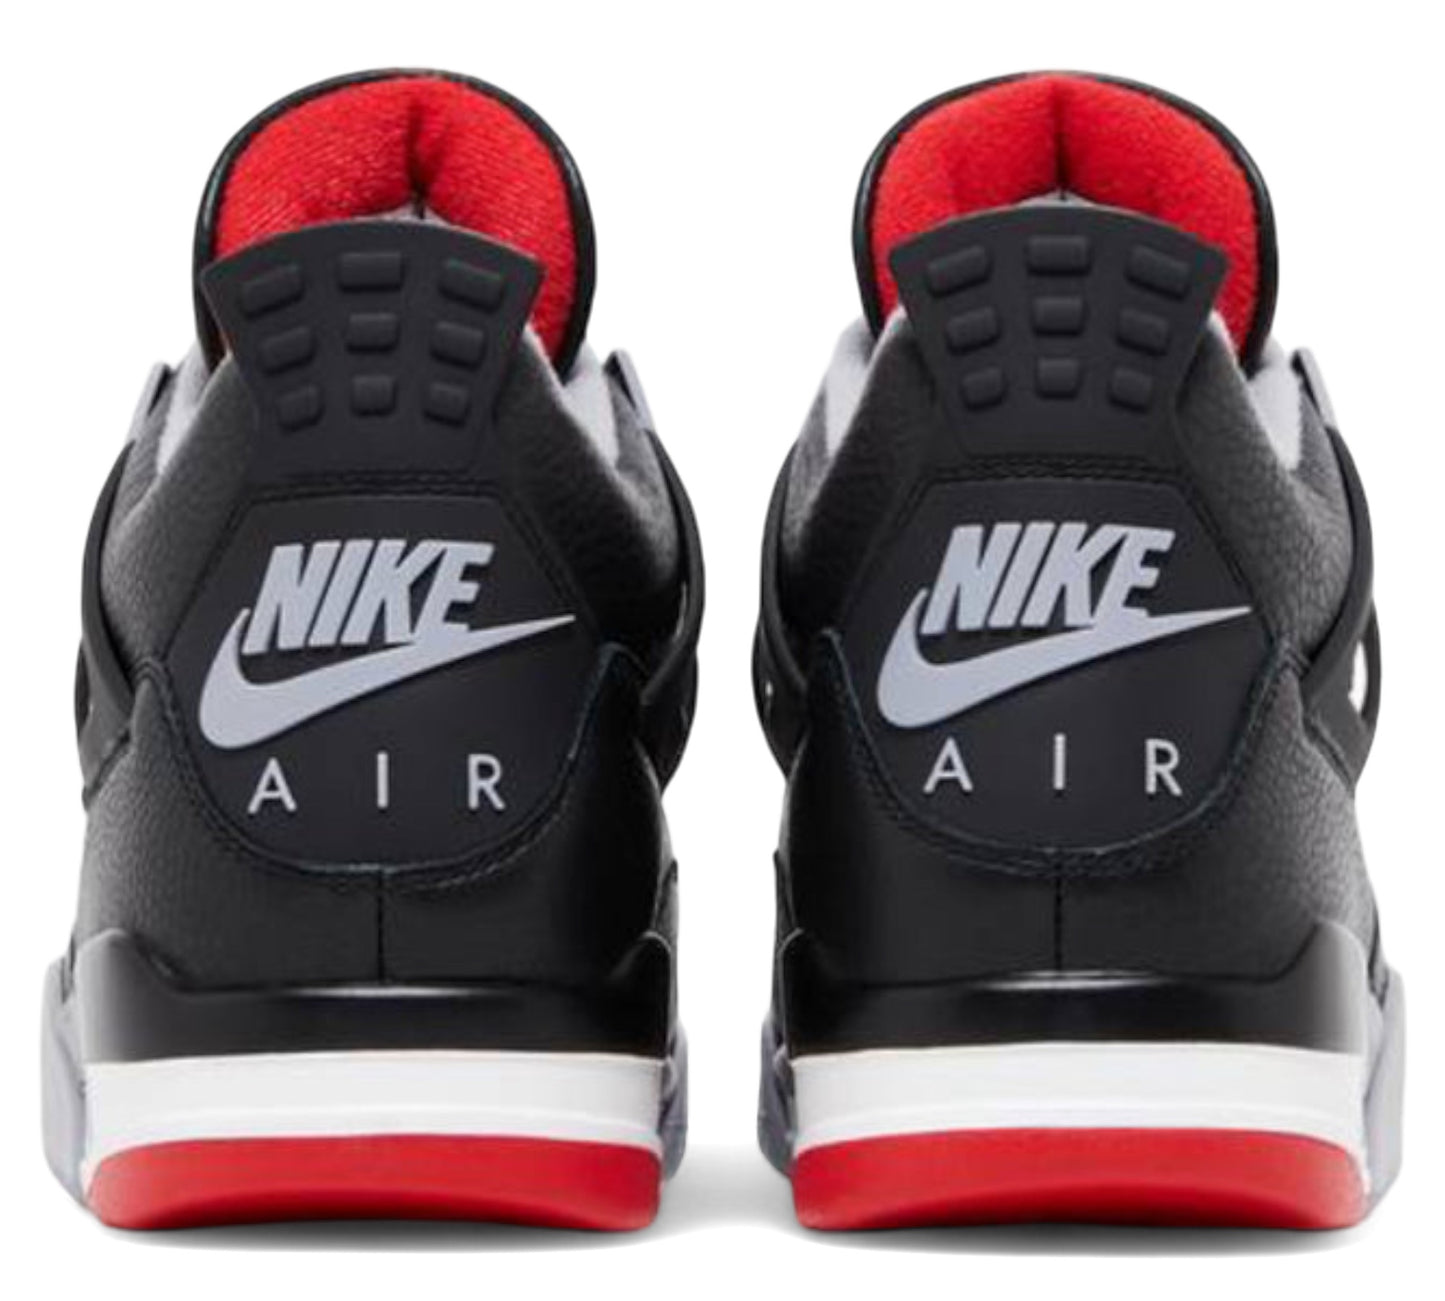 Nike Air Jordan 4 Retro "Bred Reimaginado" 